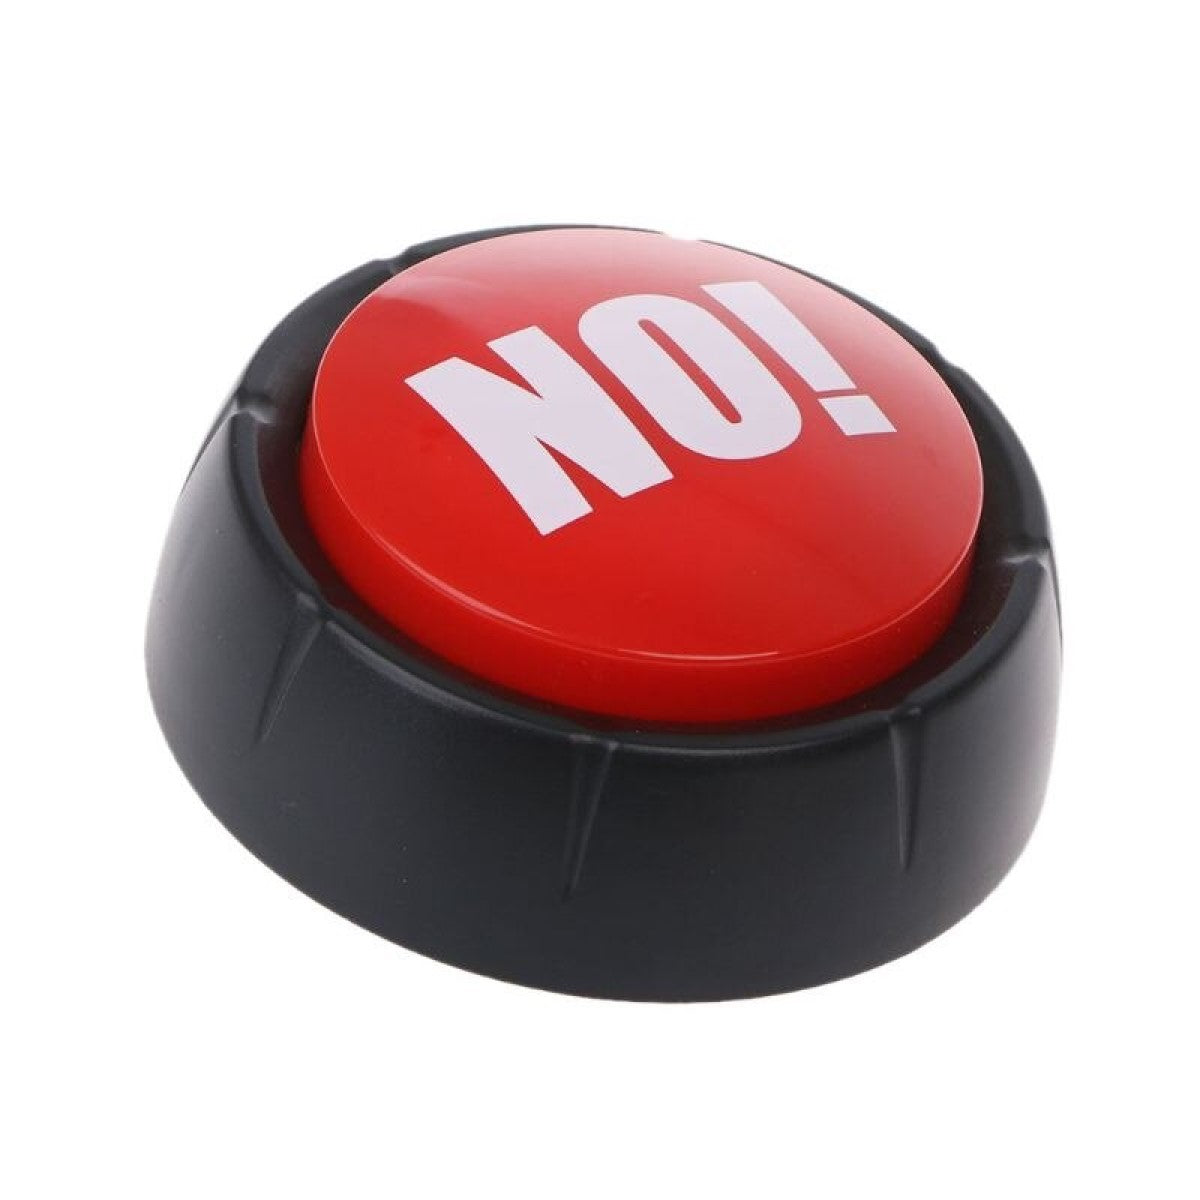 Botón entretenido ¡NO! con sonido "el gran boton rojo" broma